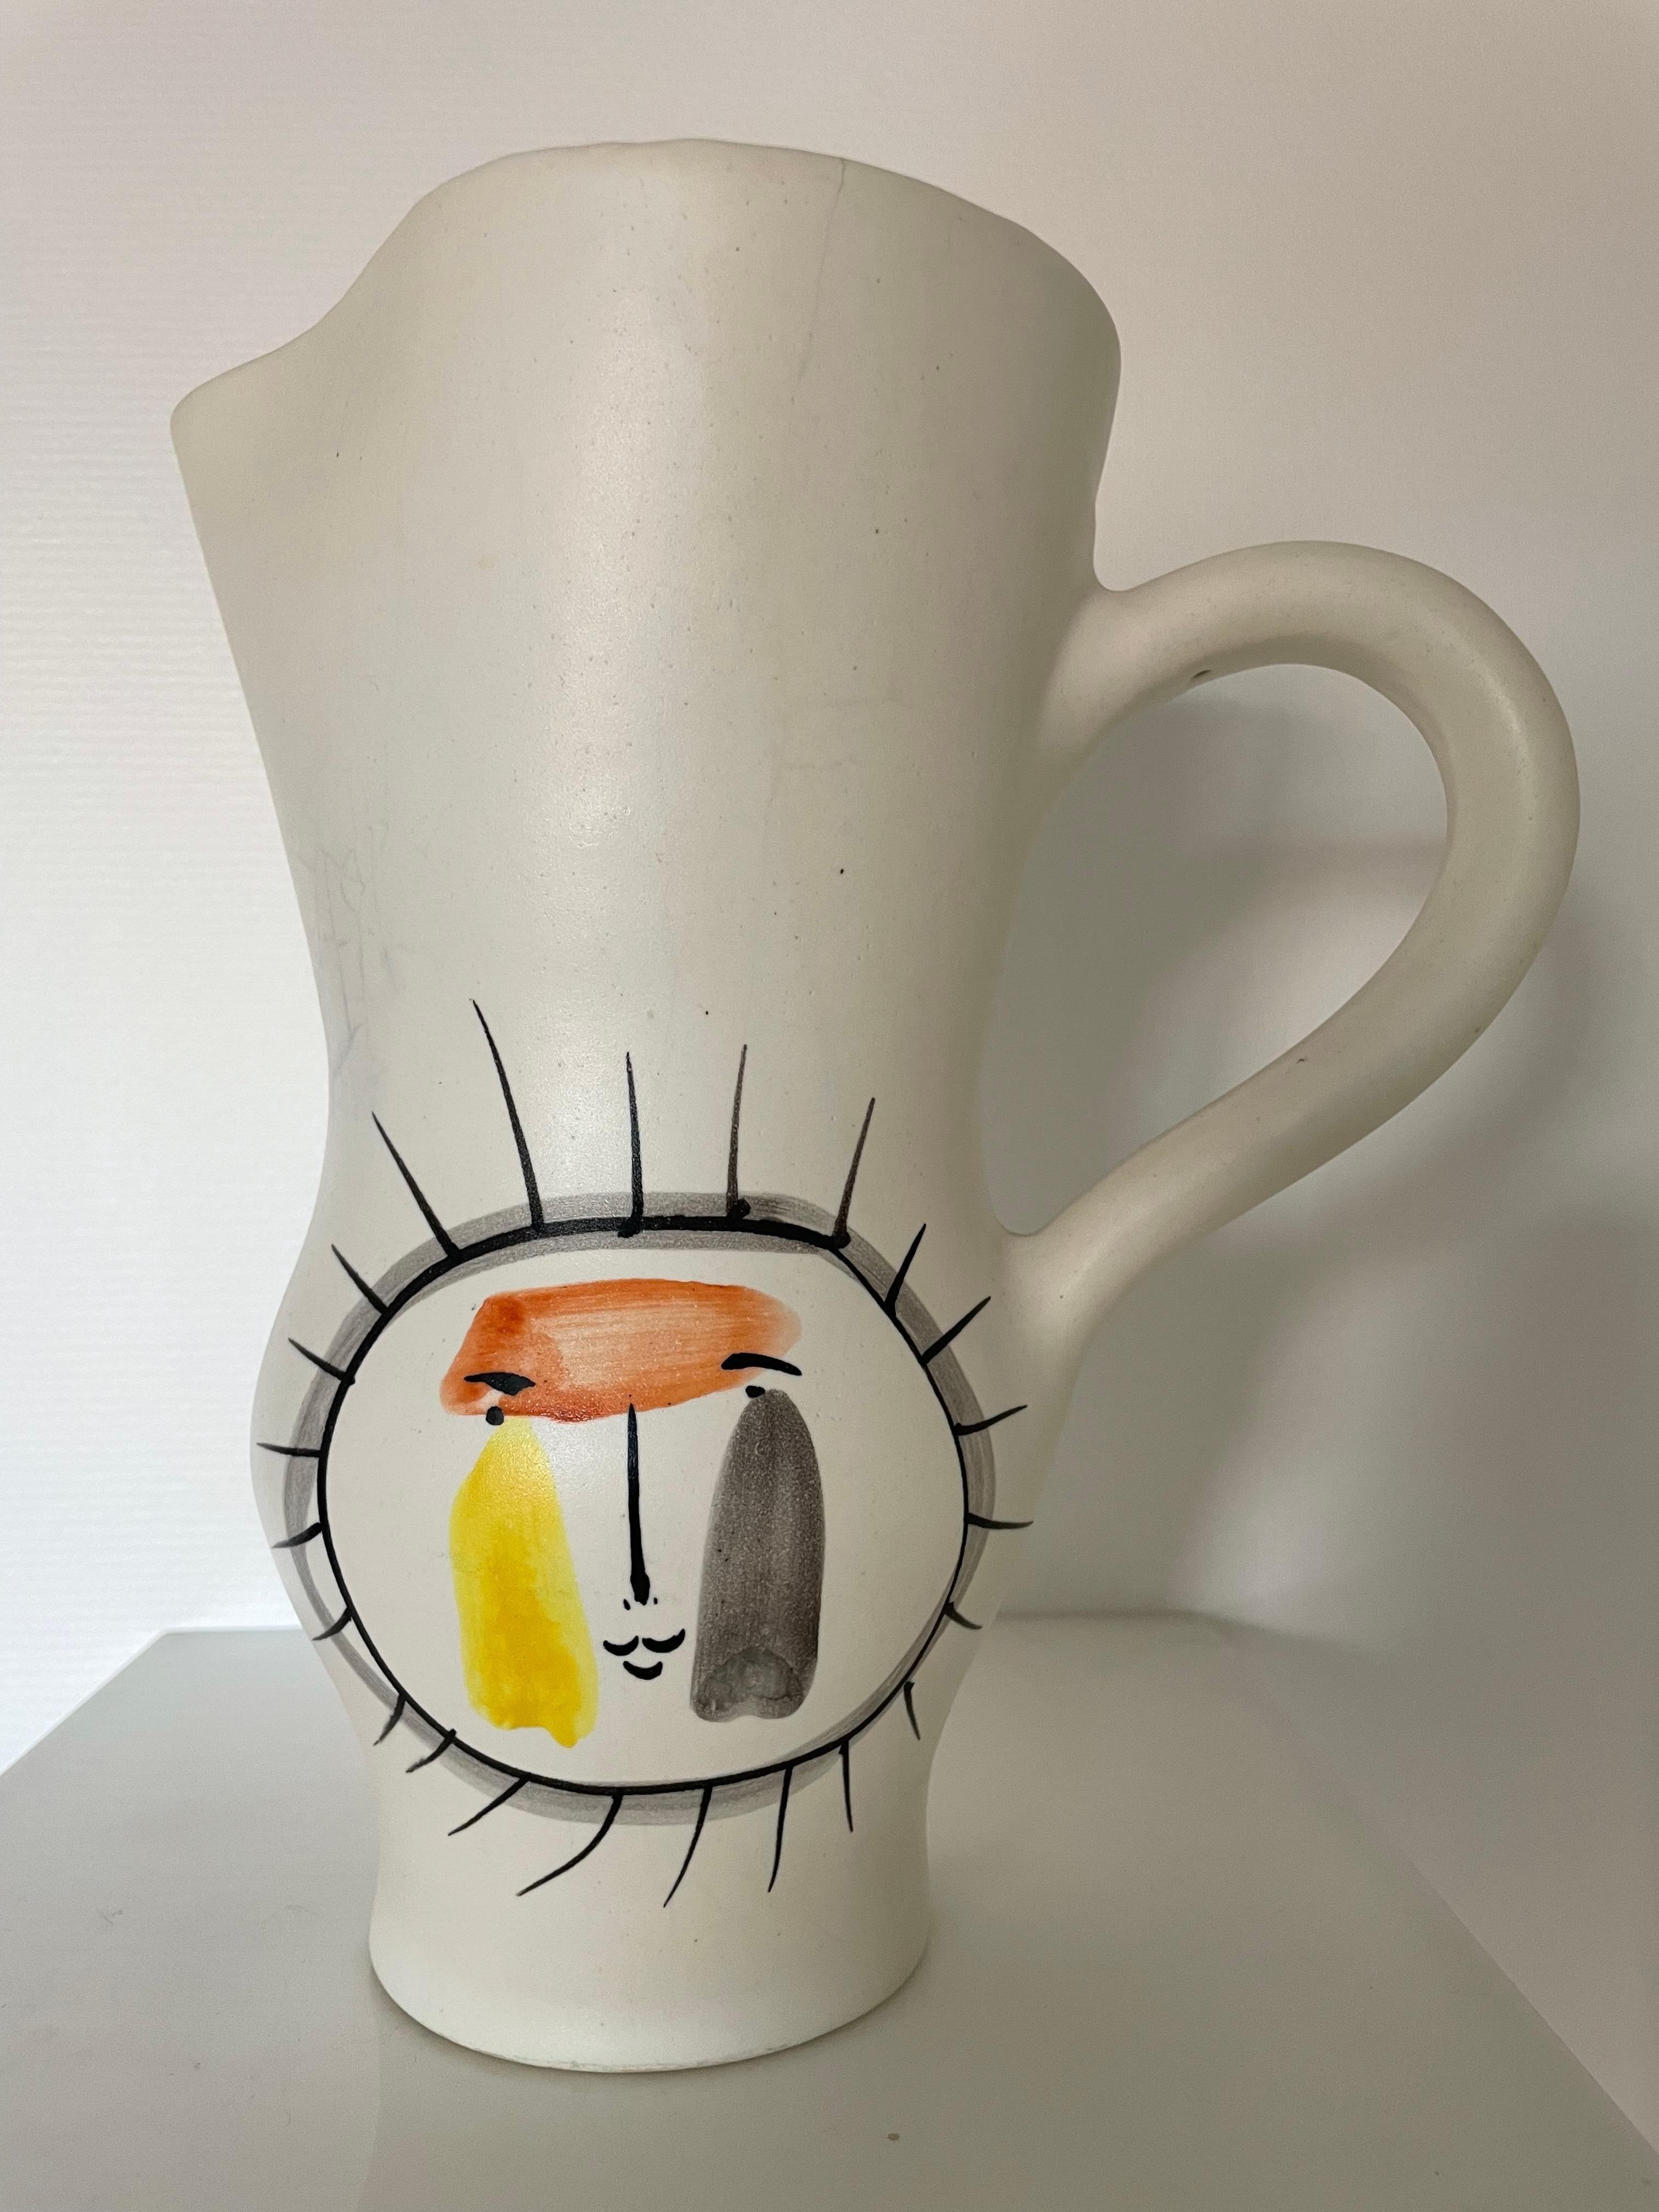 Ceramic Pitcher Vase by Roger Capron, 1950 For Sale 2